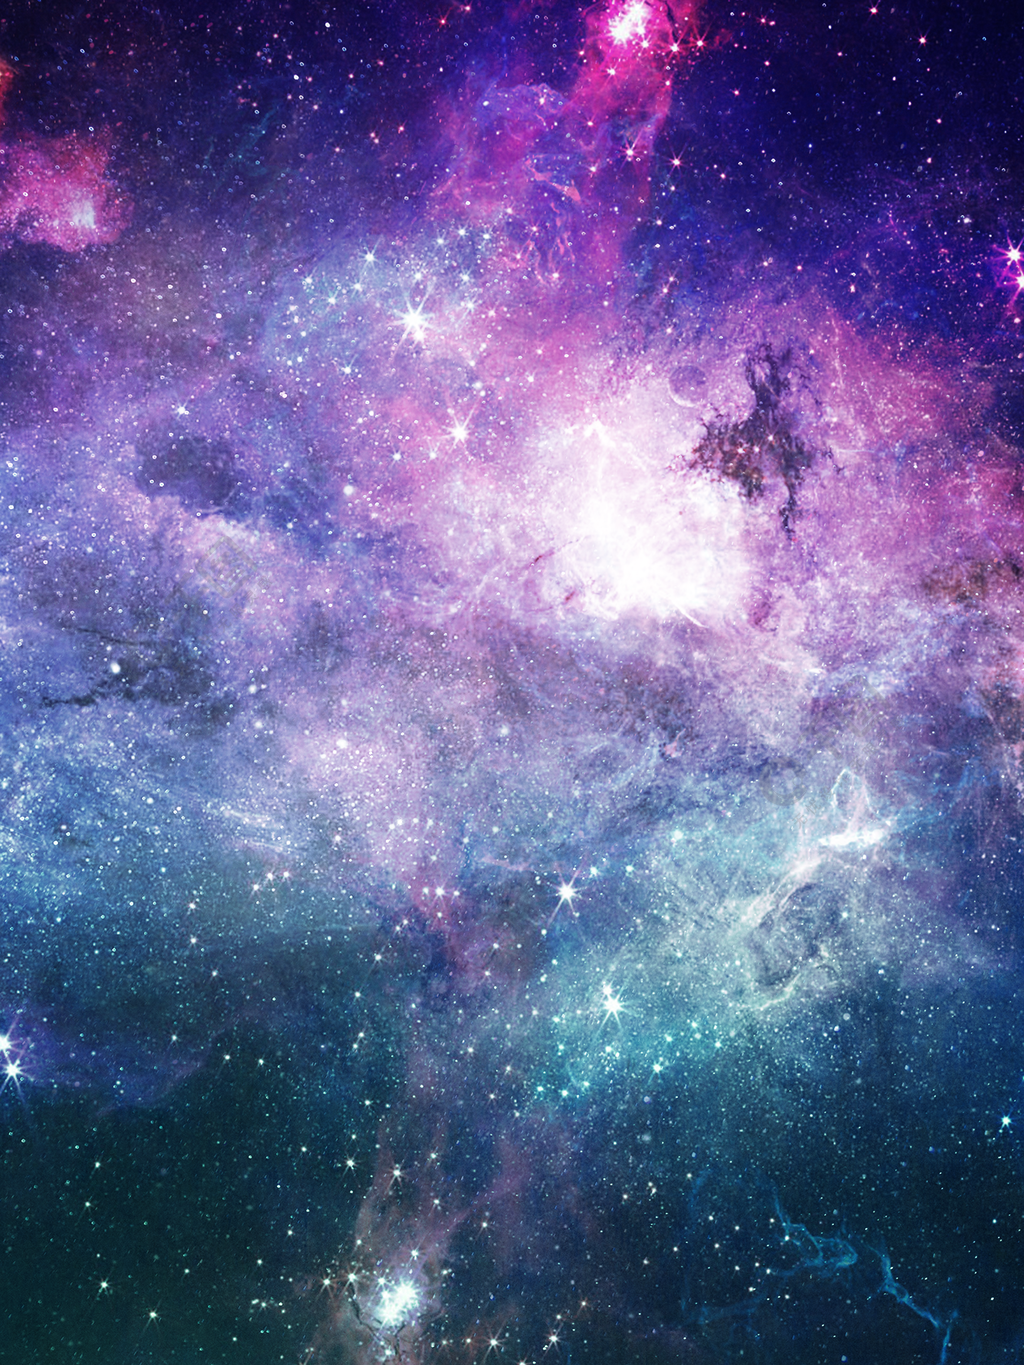 炫酷紫色星云背景素材2年前发布